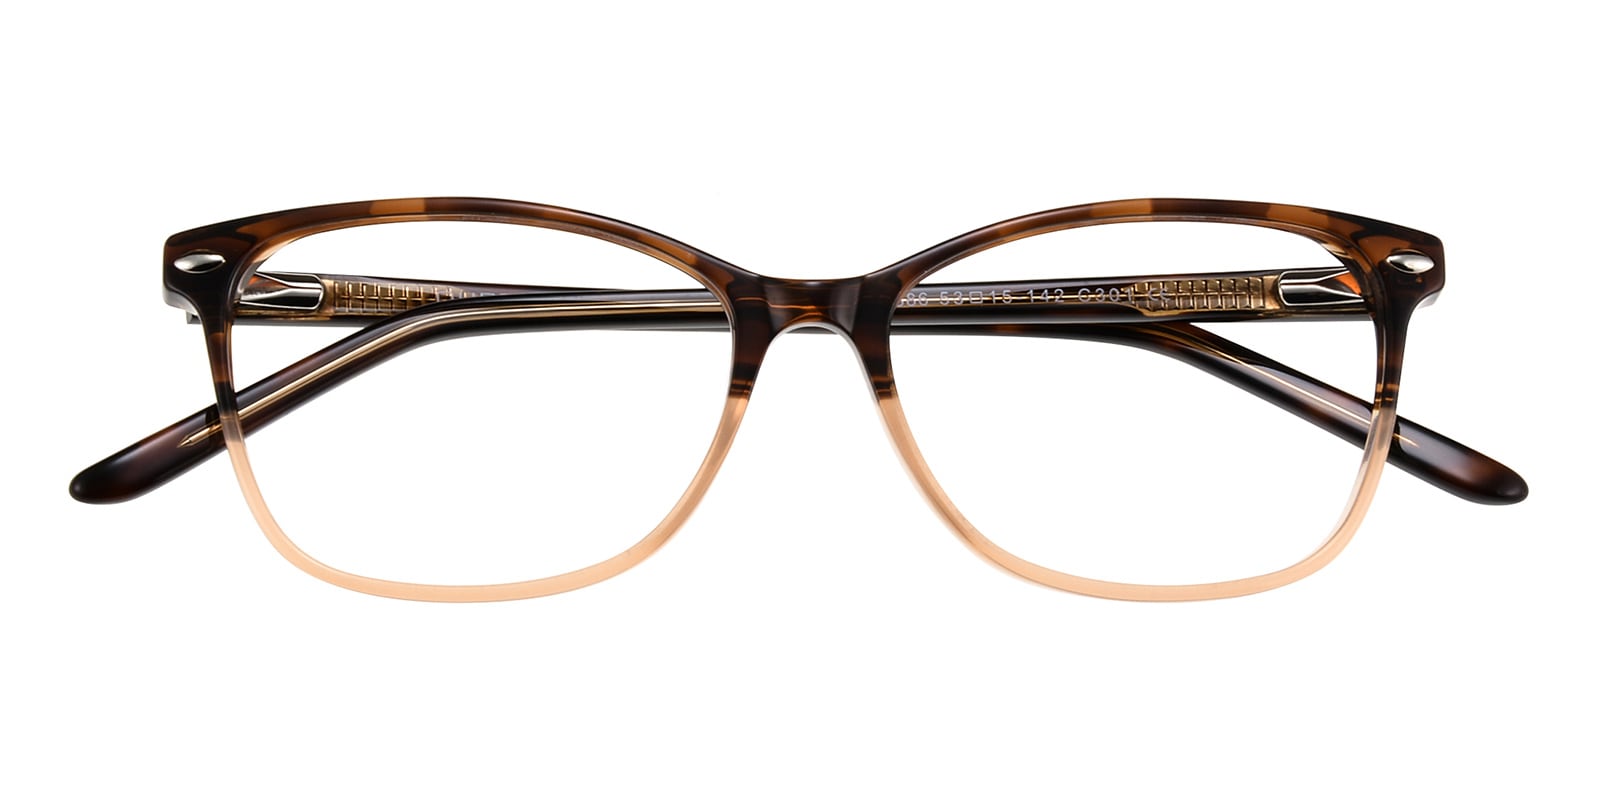 Oval,Classic Wayframe,Horn Eyeglasses, Full Frame Tortoise/Brown Plastic - FZ1297